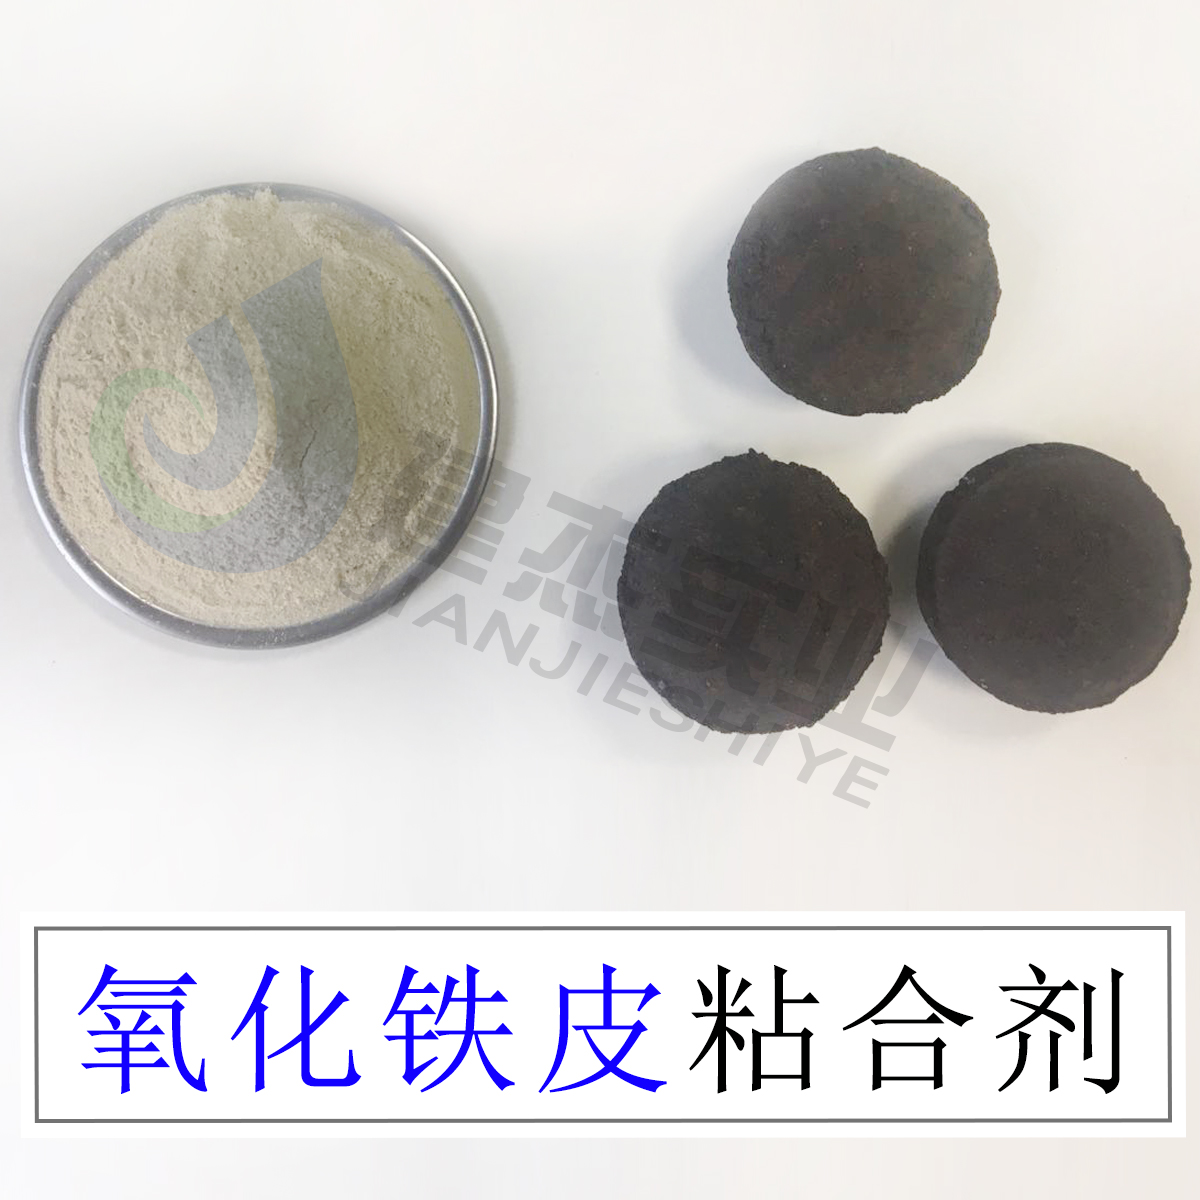 荆州 有机硅碳粉粘合剂品牌正品